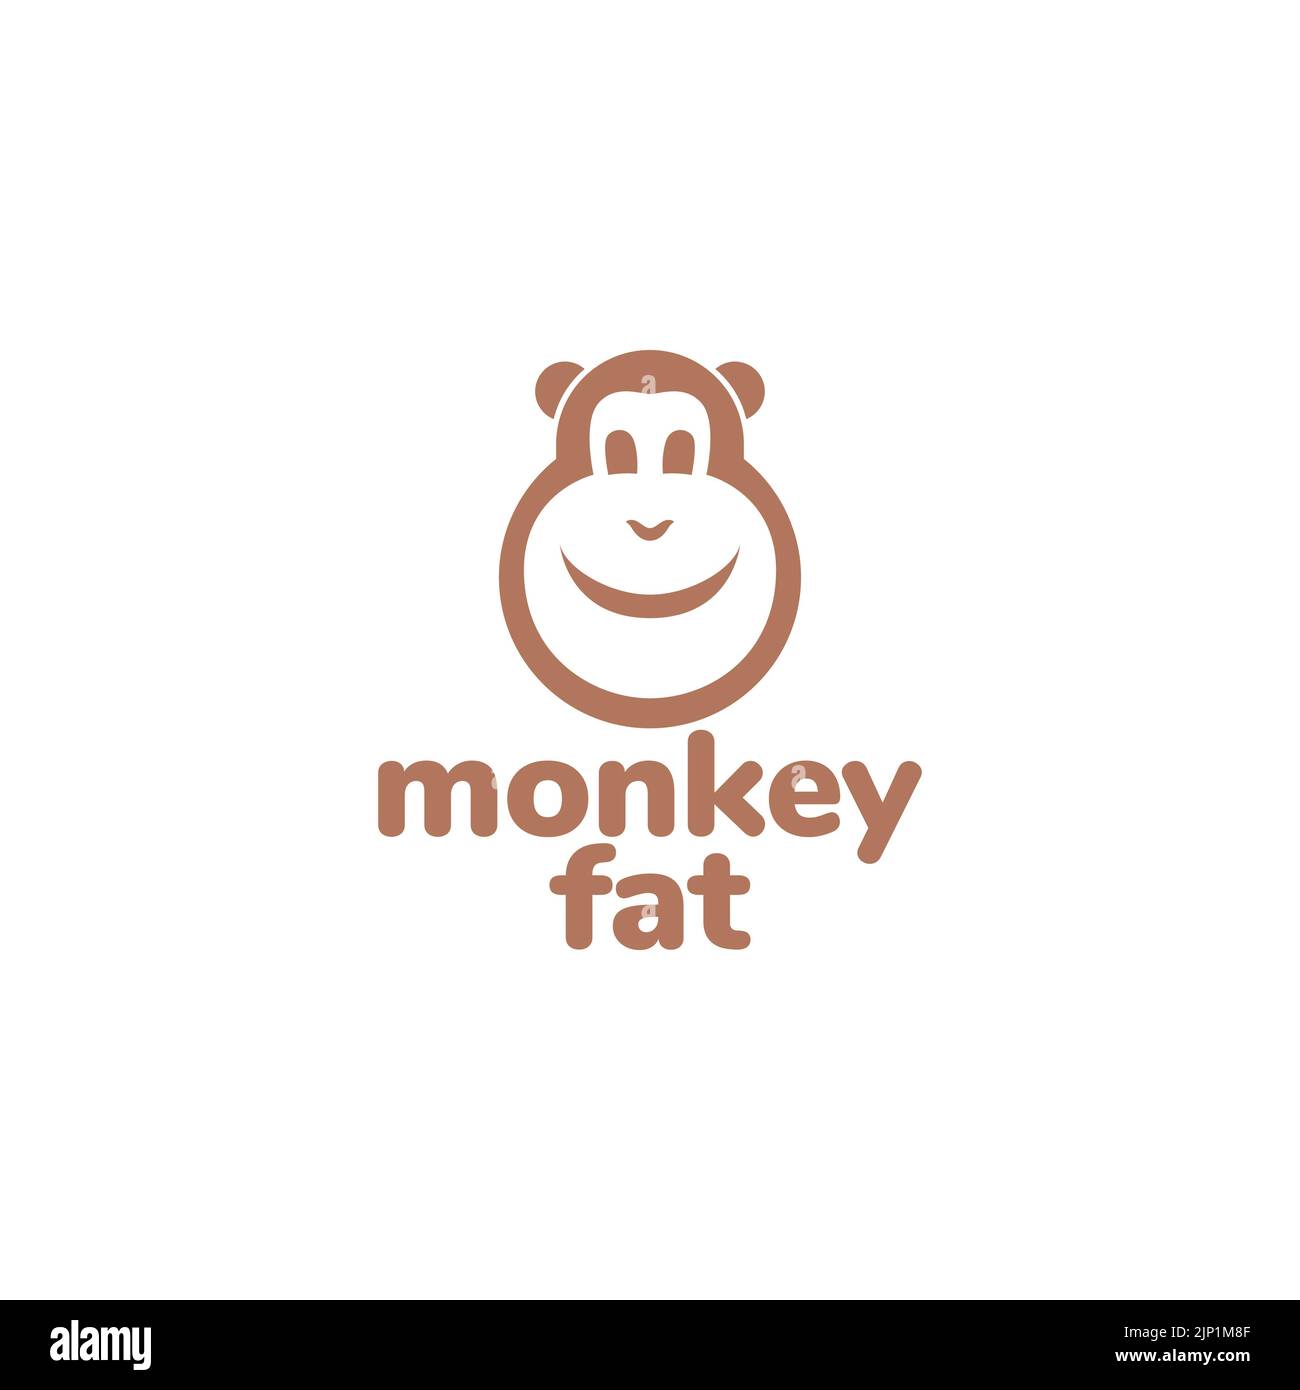 cartoon fat face monkey logo design Stock Vector